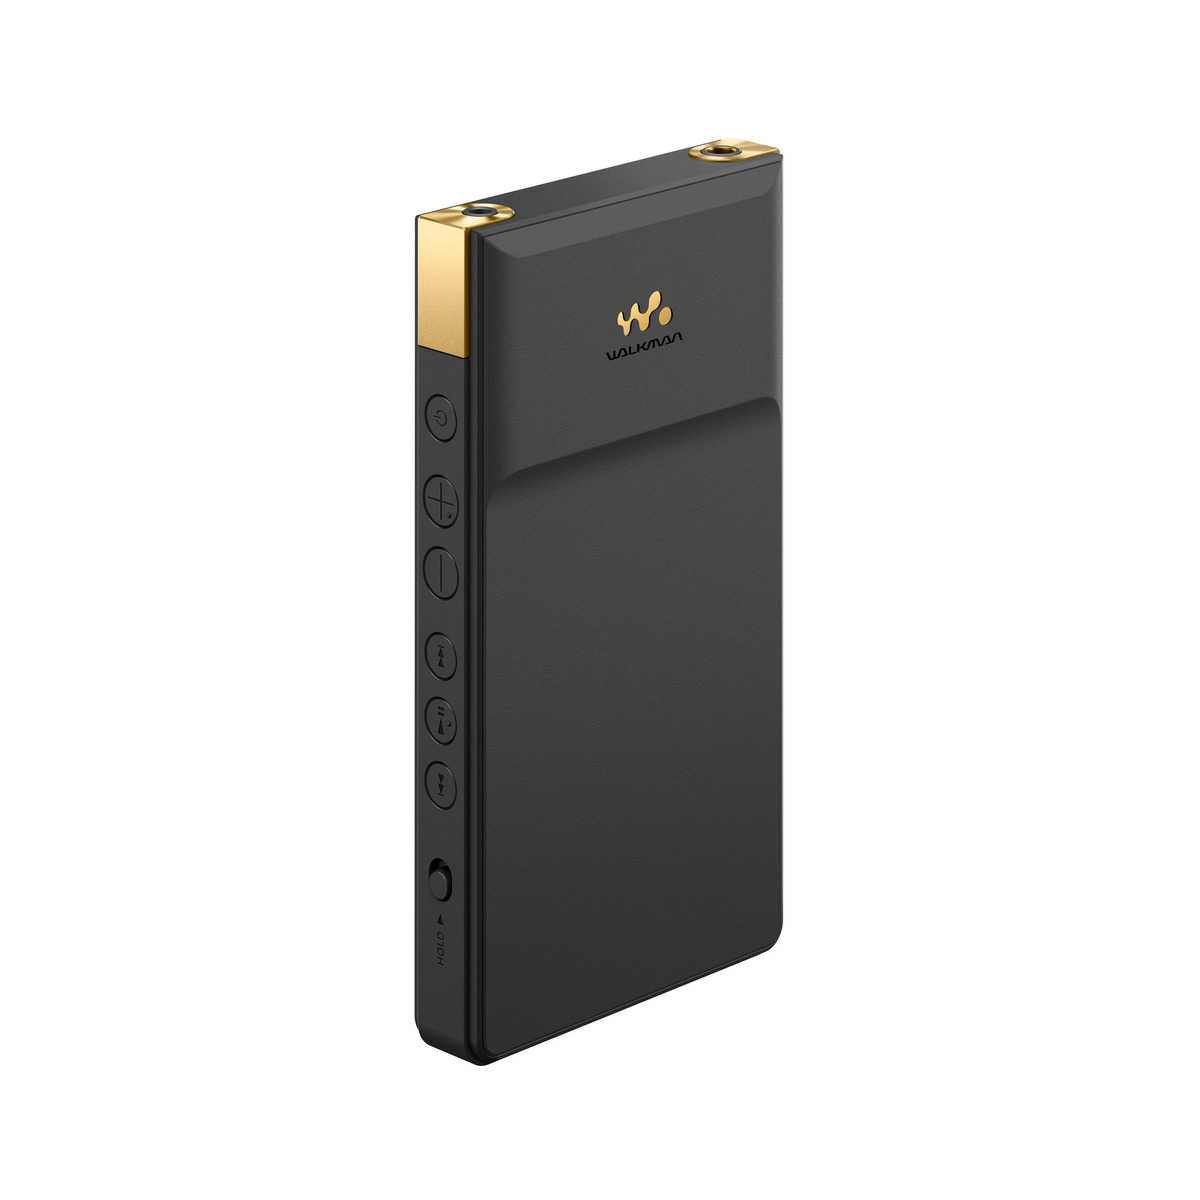 【限時下殺↘】SONY 索尼 NW-ZX707 Walkman 數位隨身聽 台灣公司貨